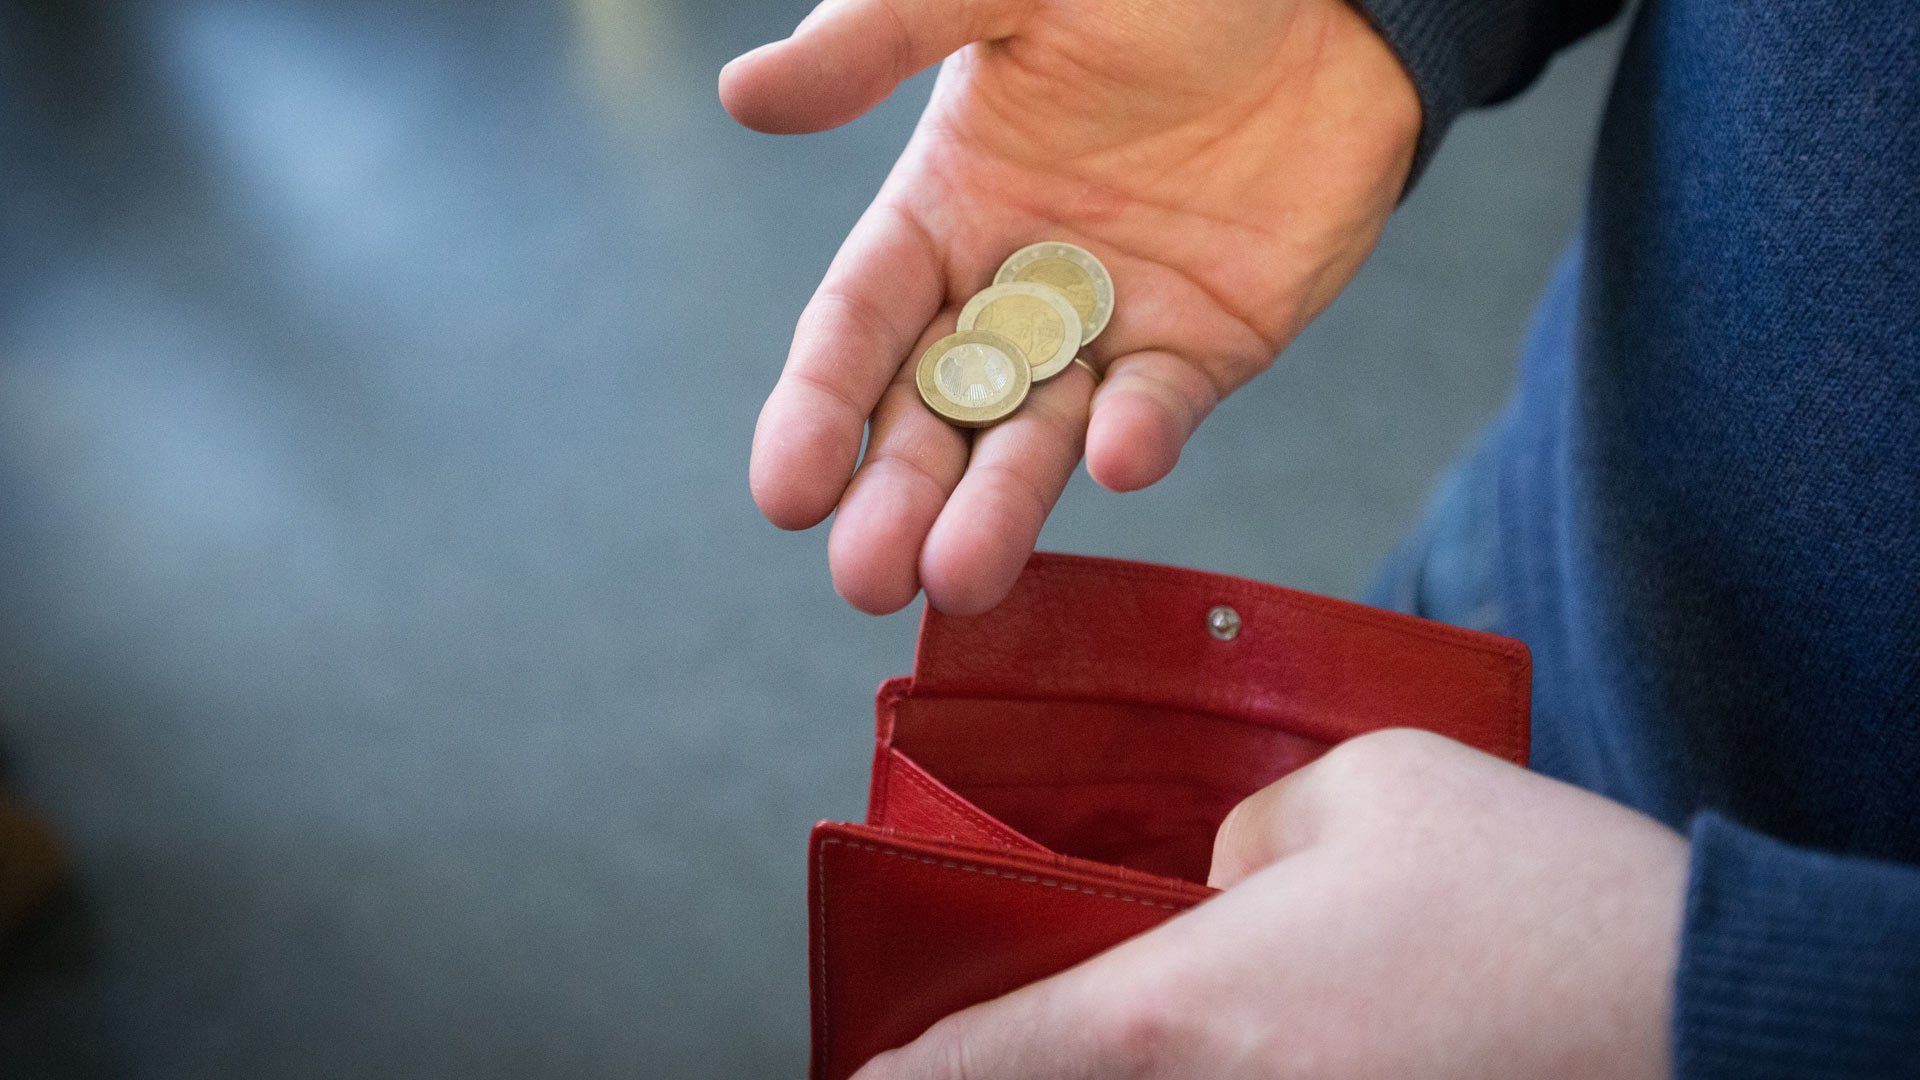 Münzen im Wert von fünf Euro über ein rotes Portemonnaie gehalten.